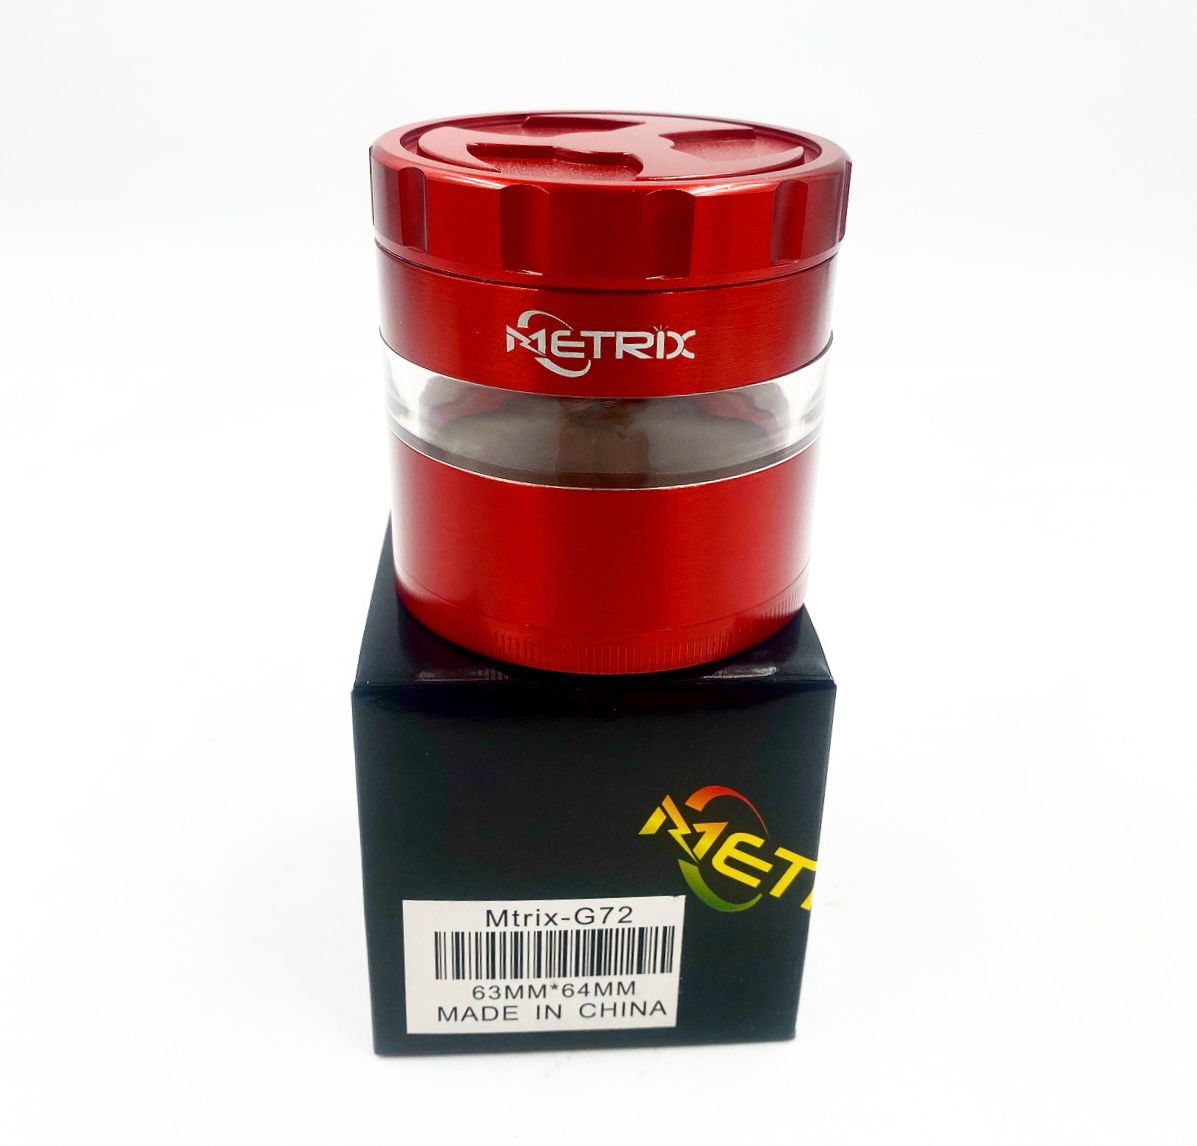 Metrix-G72 Metallic Red Grinder